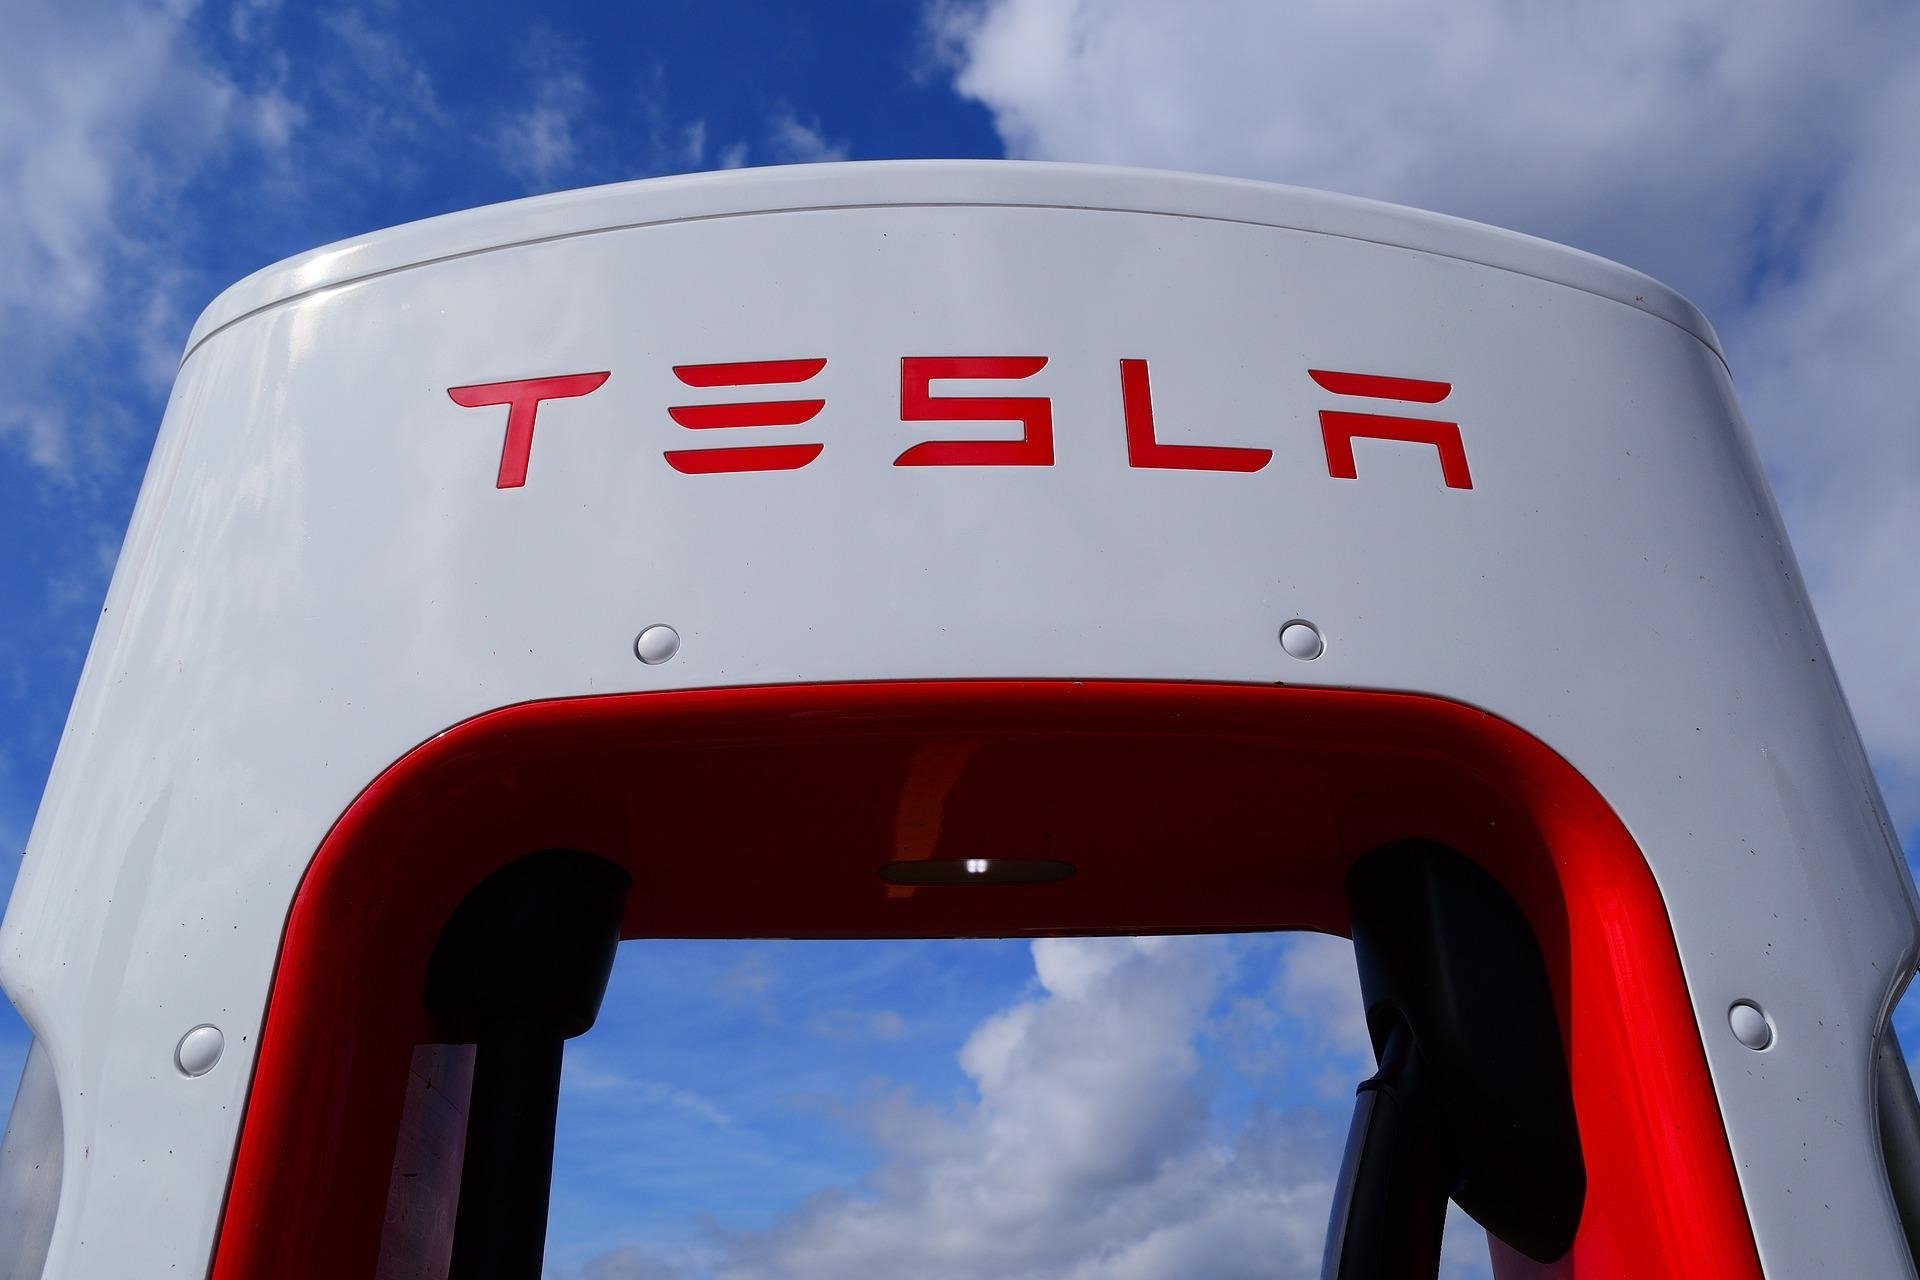 Tesla มีแผนจะเลือกสถานที่ตั้งโรงงานแห่งใหม่ในปีนี้